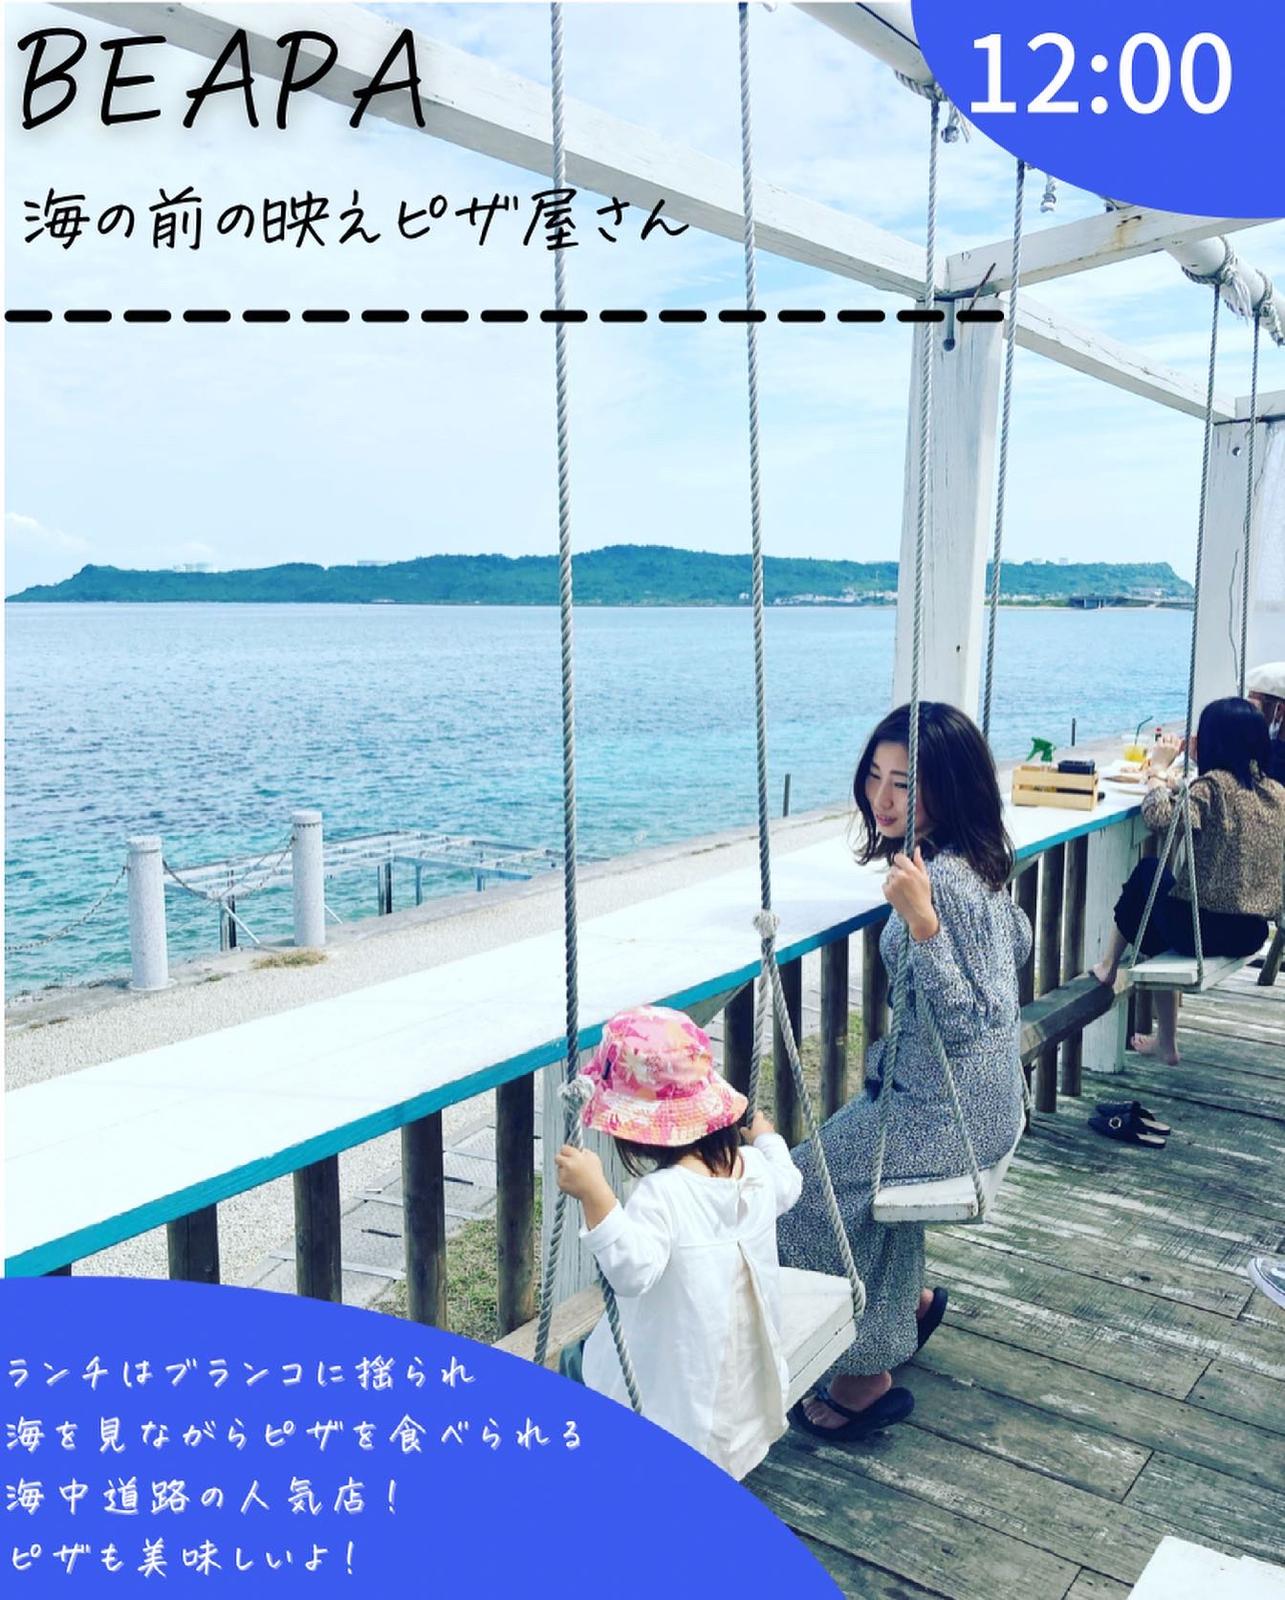 沖縄本島0 満足1日プラン Yuta Okinawa が投稿したフォトブック Lemon8